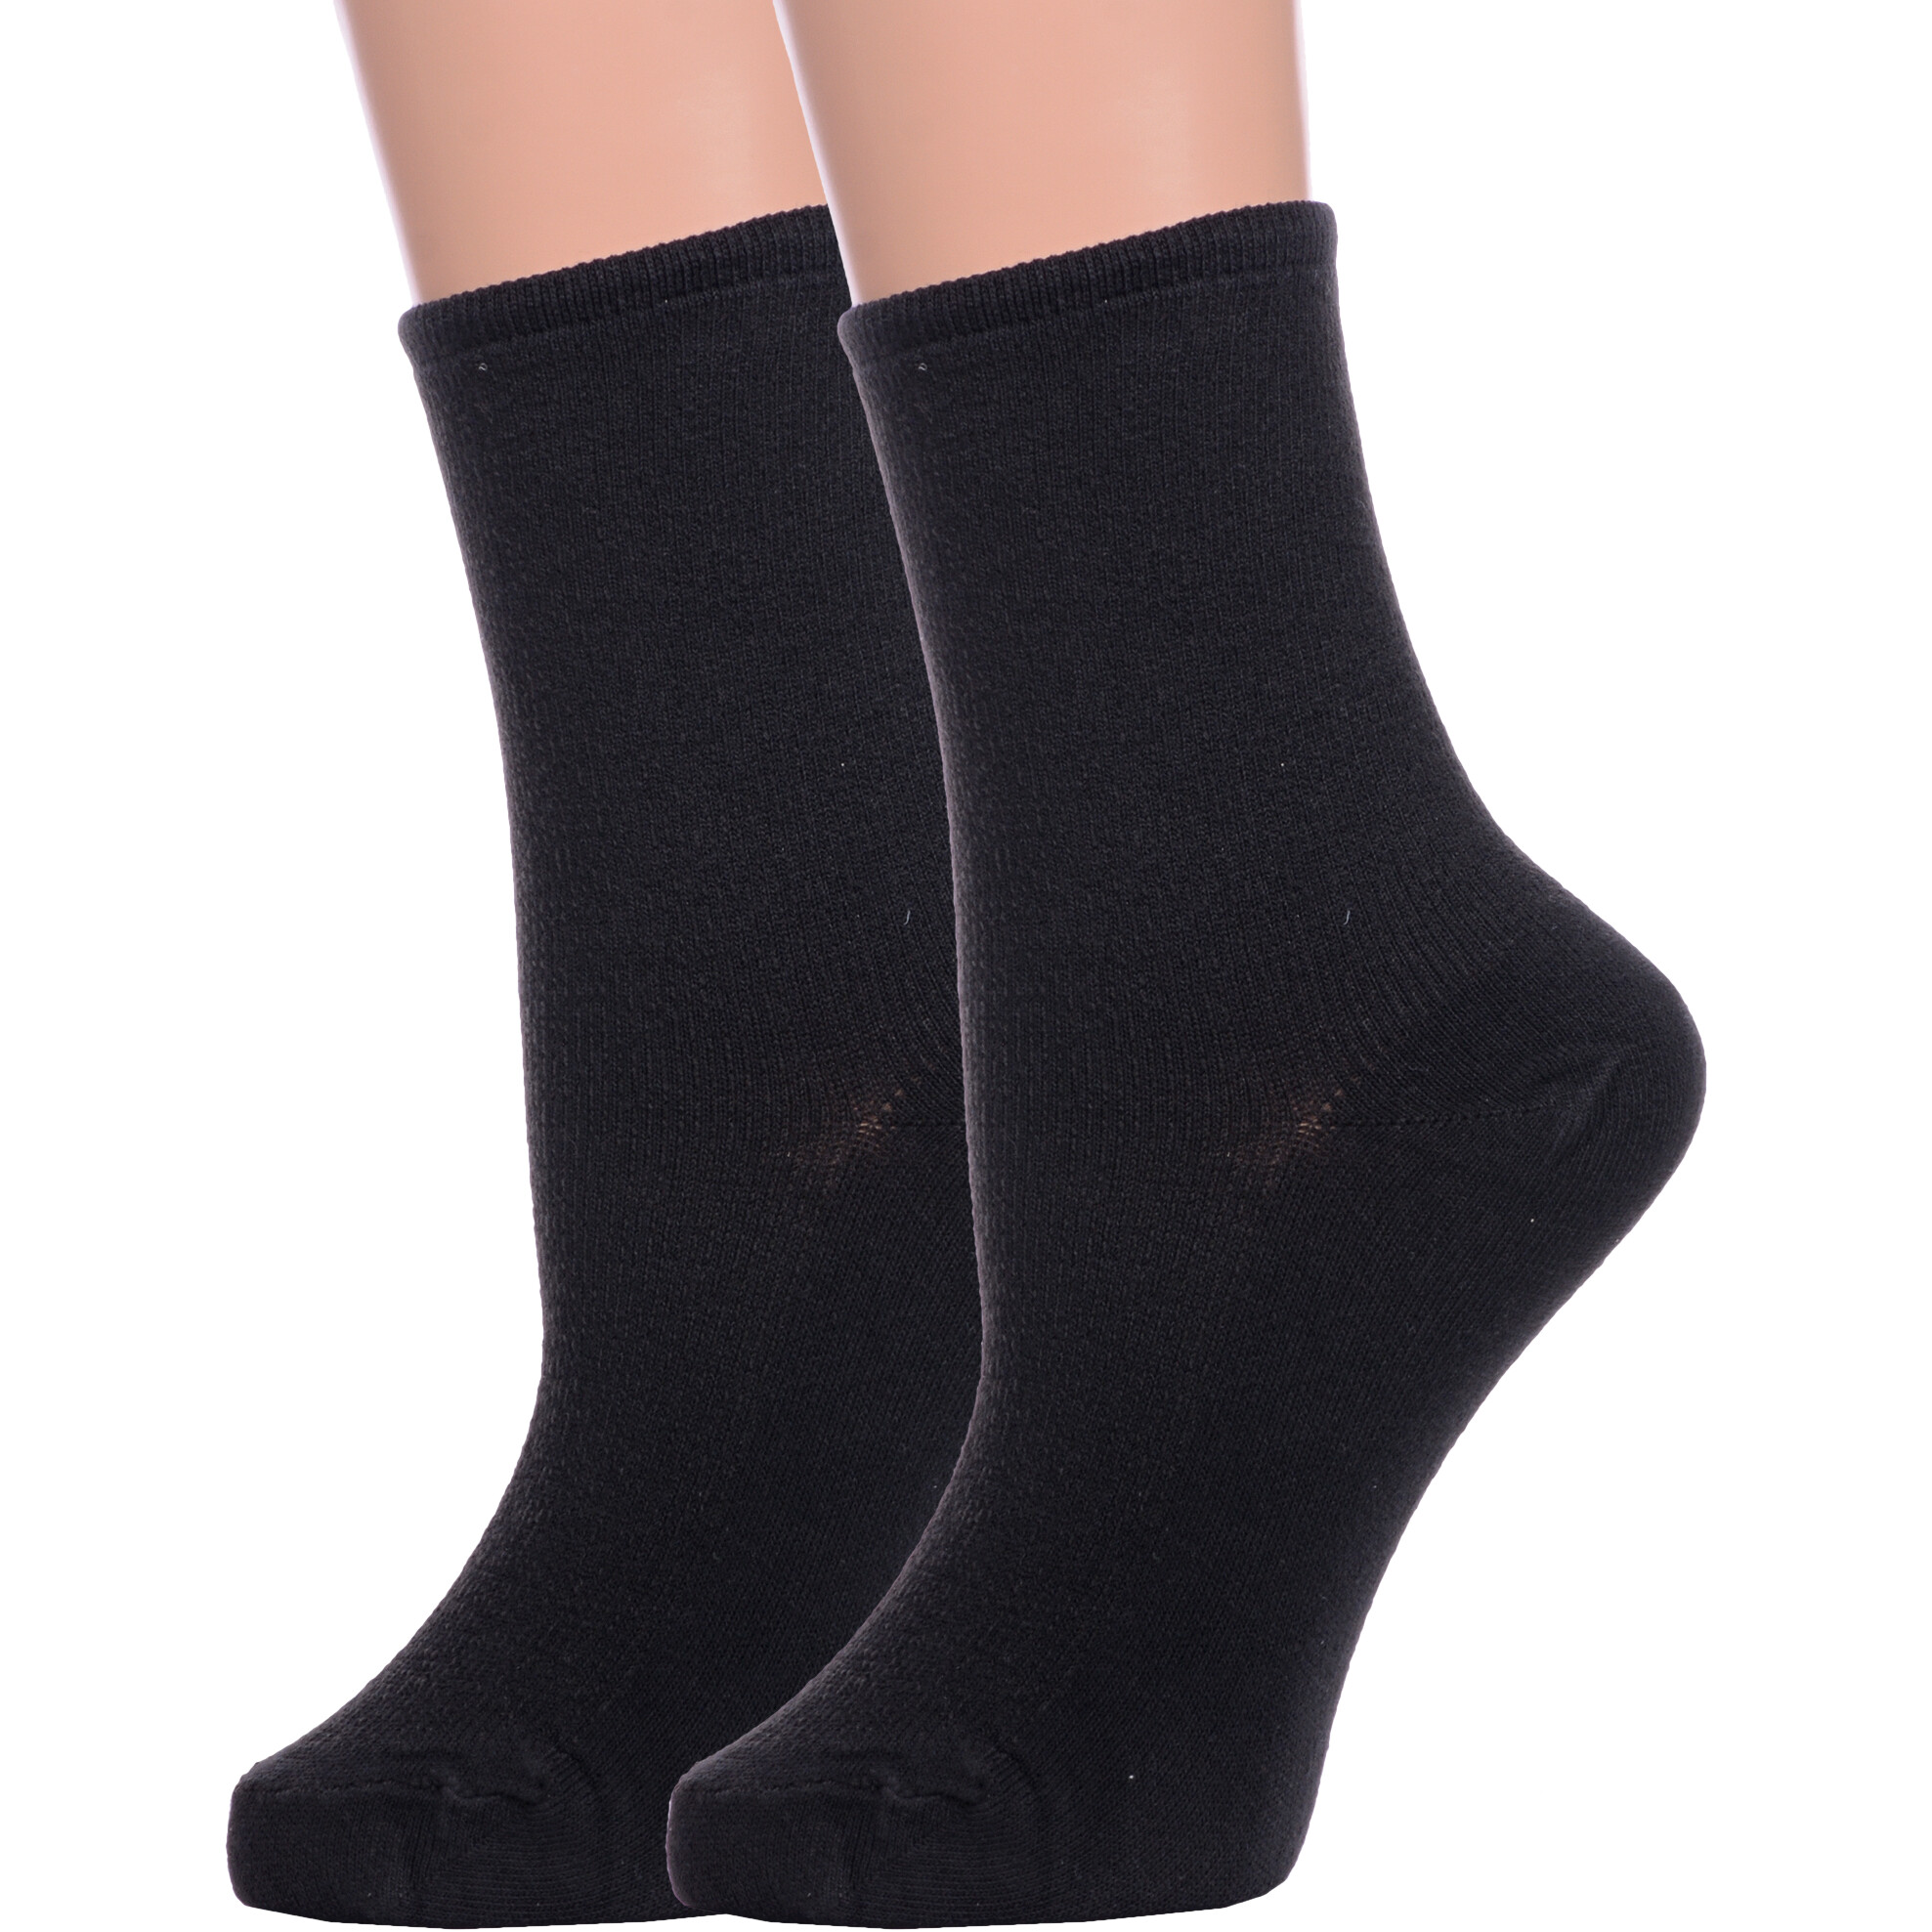 Комплект носков женских Альтаир 2-М198 черных 25 2 пары